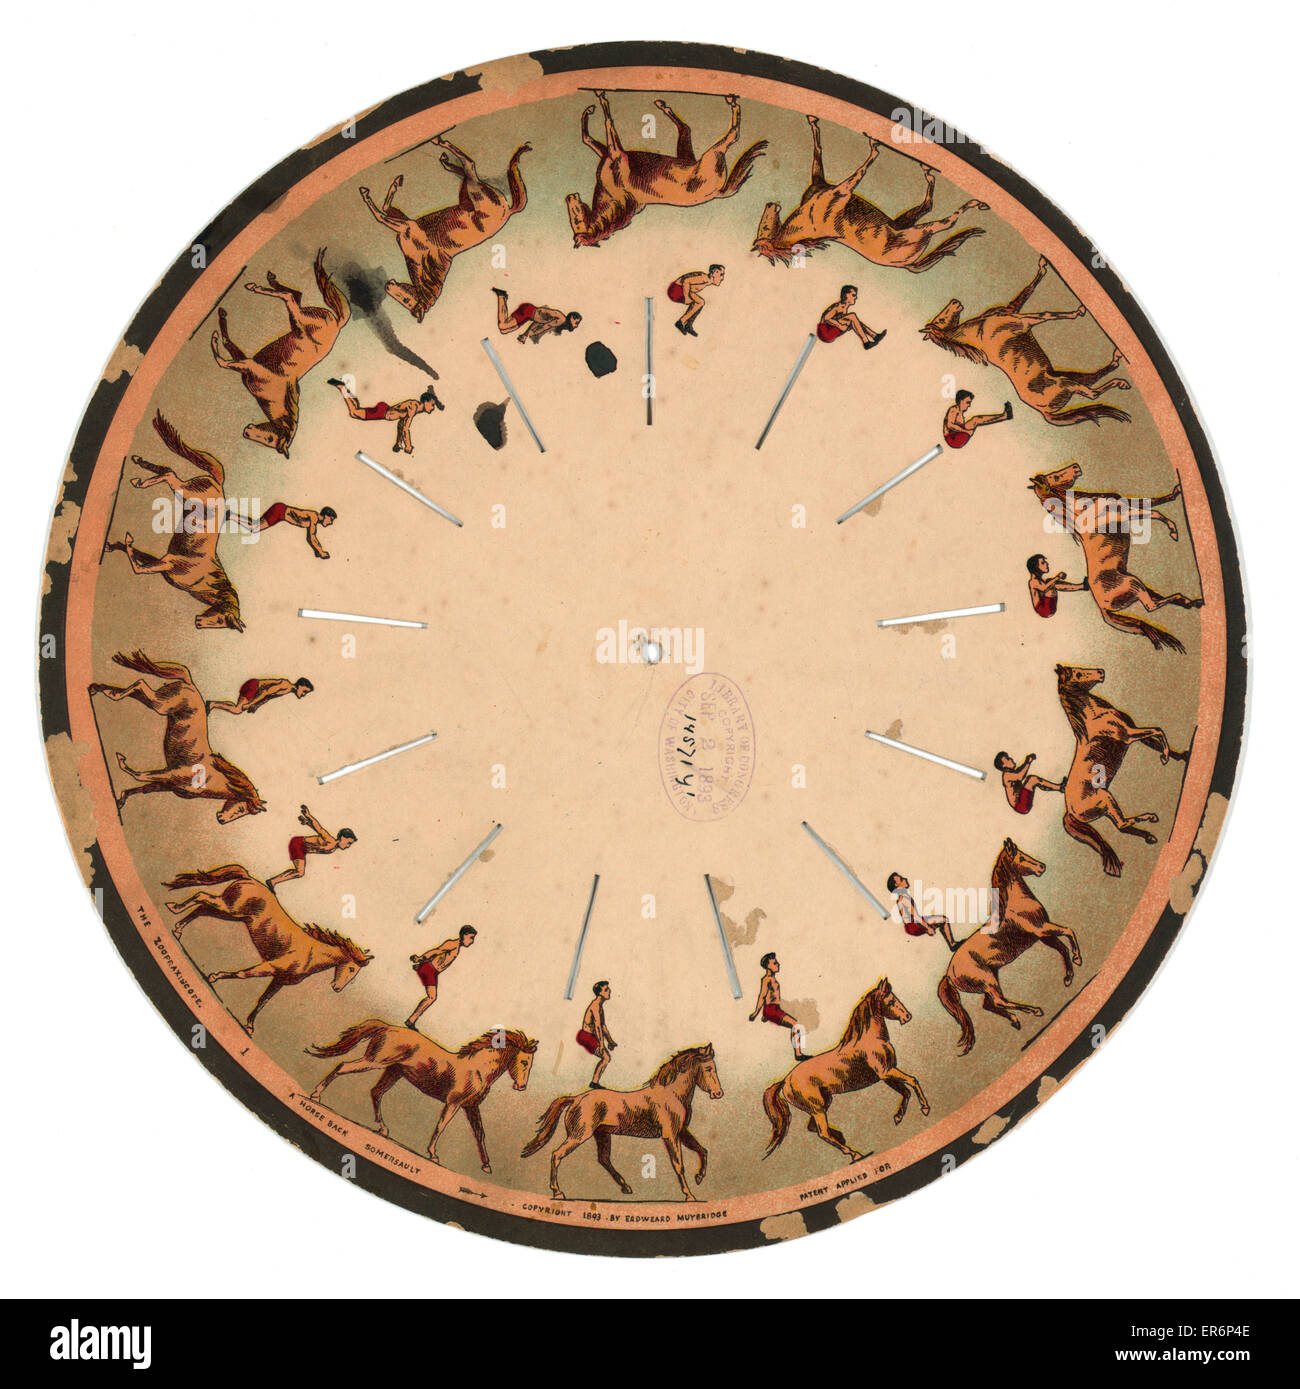 Das Zoopraxiscope - ein Pferd zurück Salto. Bilder auf einer CD die bei gesponnen gibt die Illusion eines Mannes einen Purzelbaum auf dem Pferderücken zu tun. Datum c1893. Stockfoto